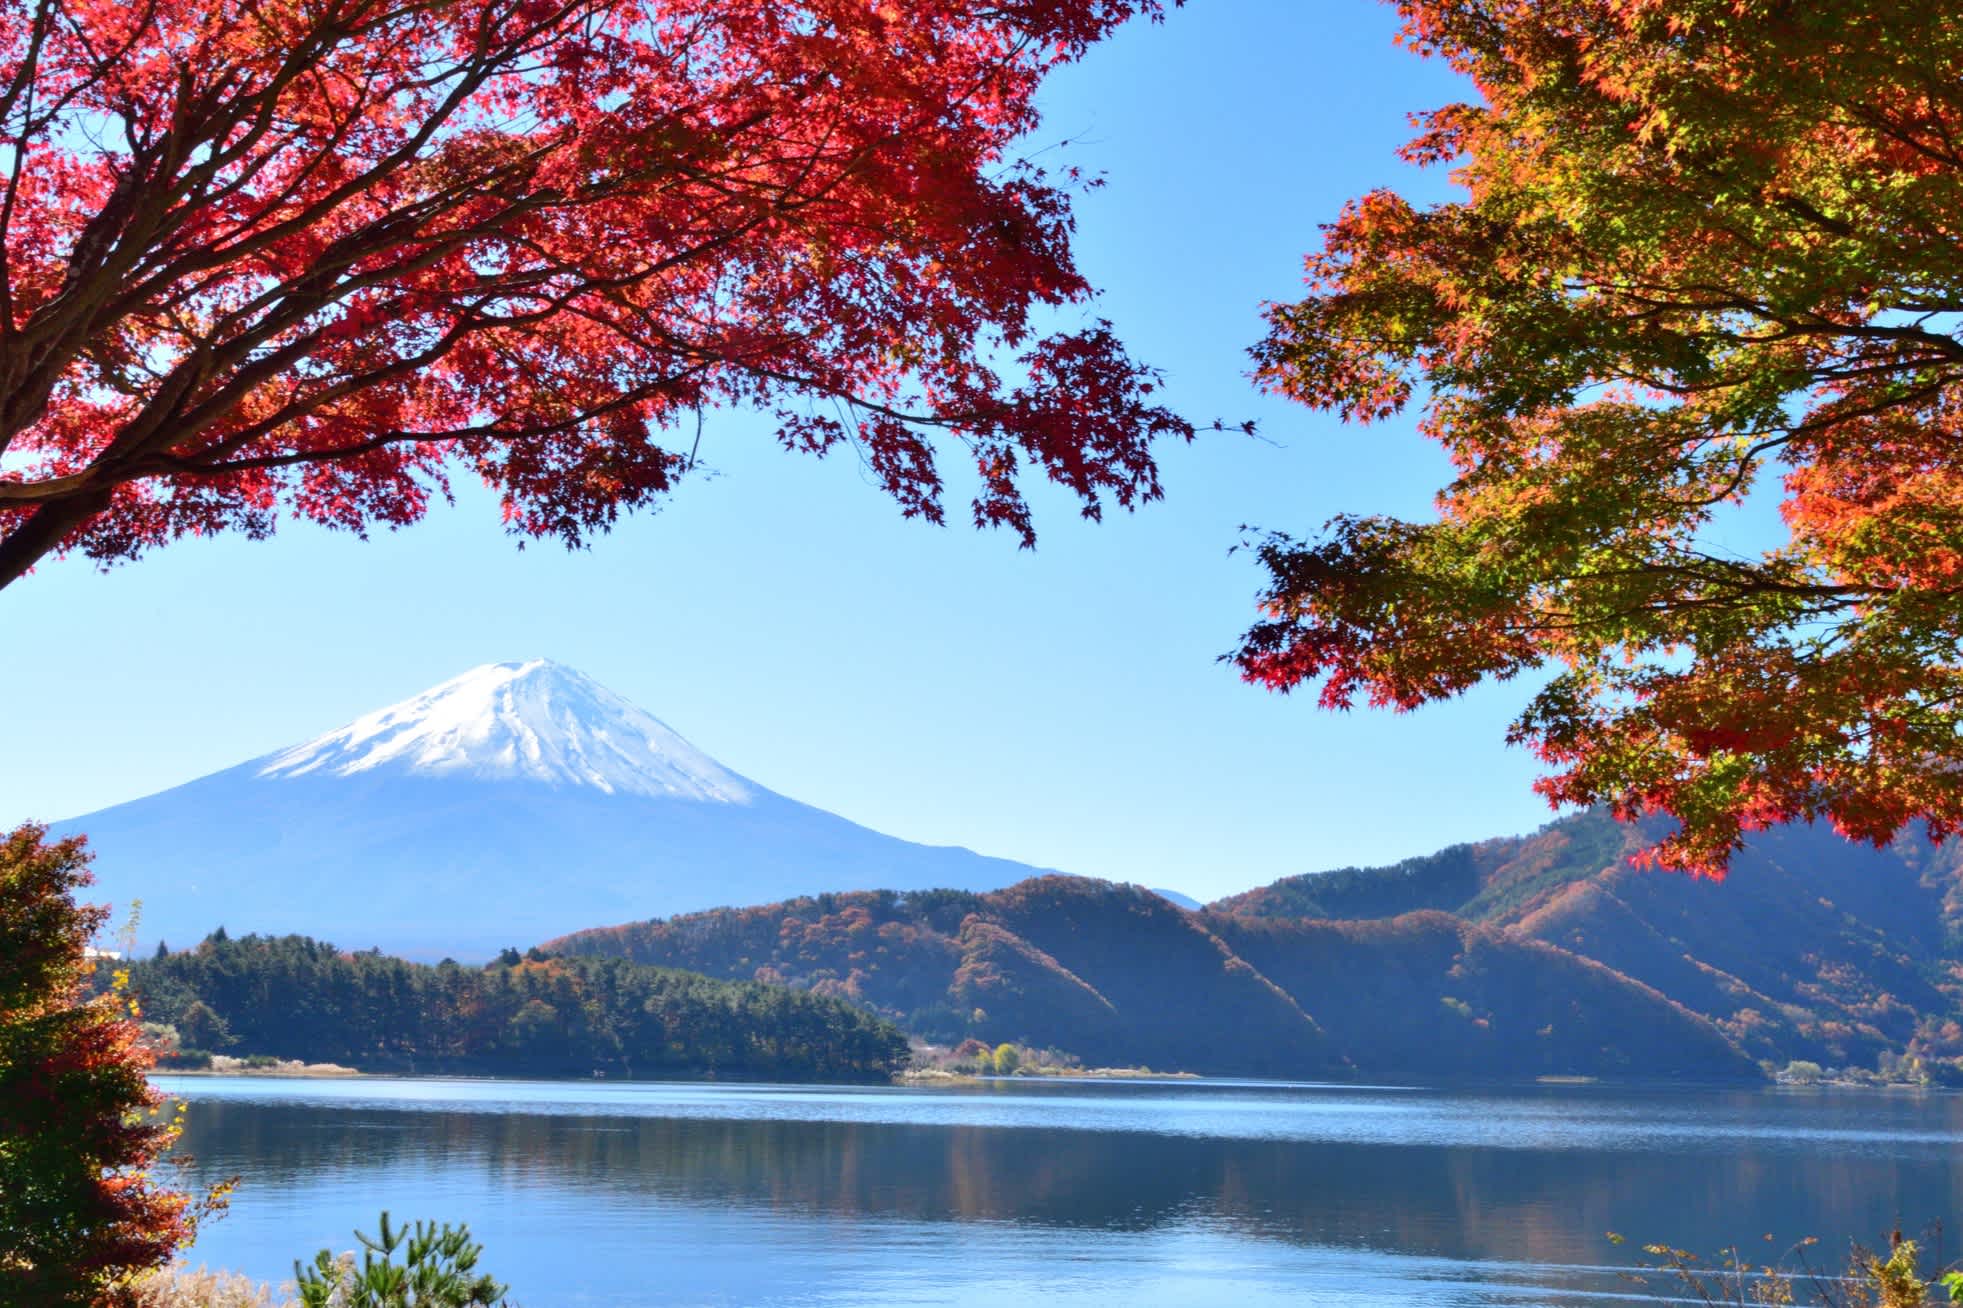 Berg Fuji im Hintergrund, See und Bäume mit bunten Blättern im Vordergrund